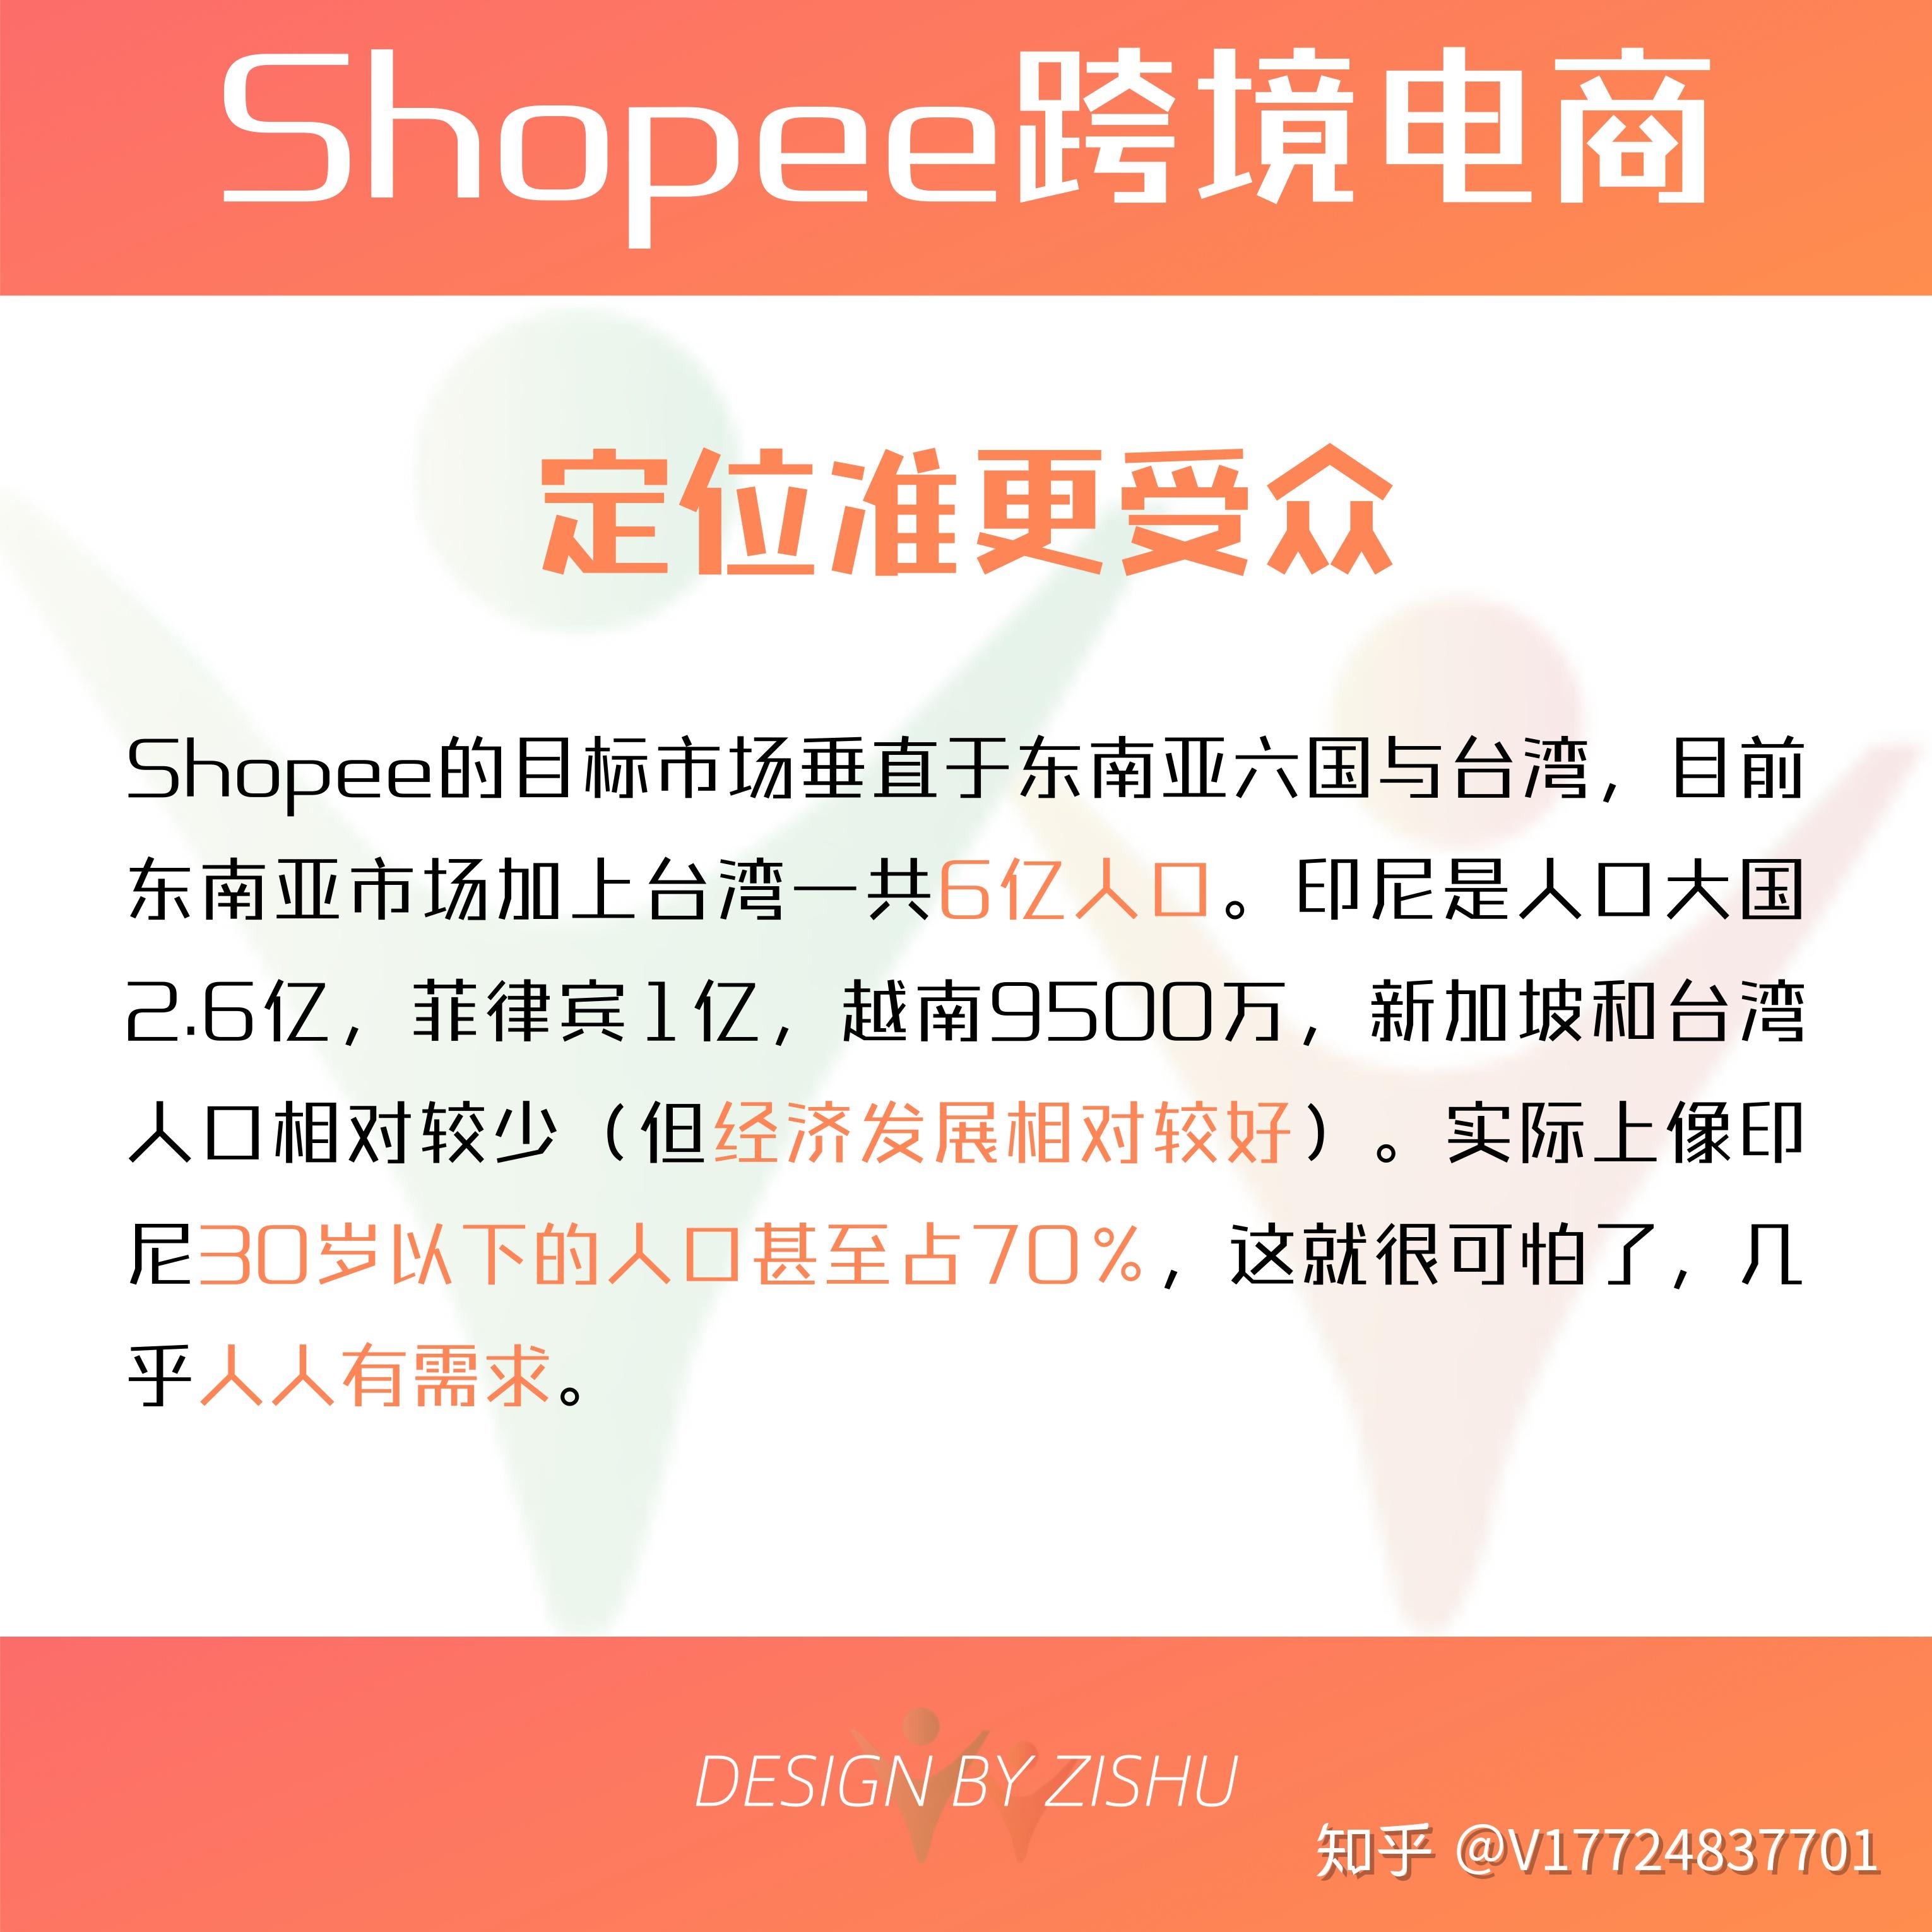 Shopee虾皮购物新加坡市场宣传片-学习视频教程-腾讯课堂